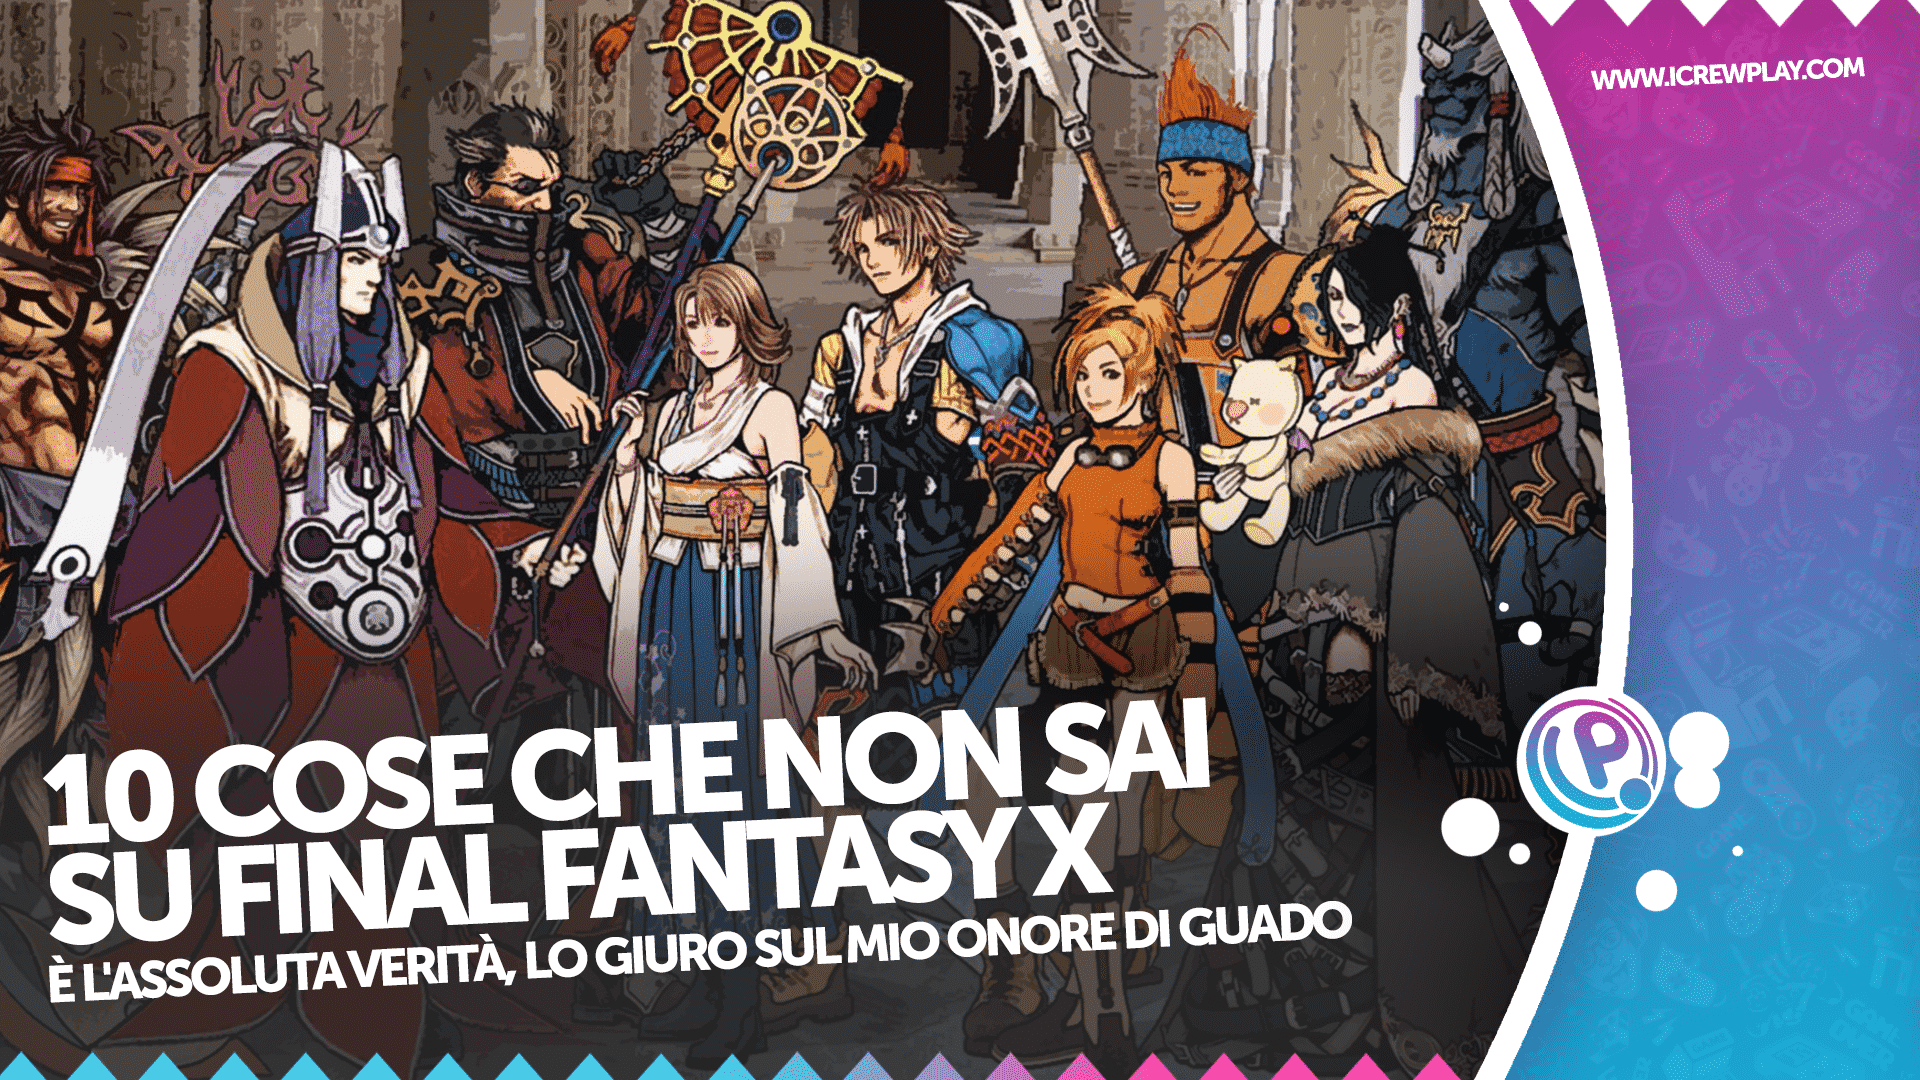 10 cose che non sai su Final Fantasy X 6